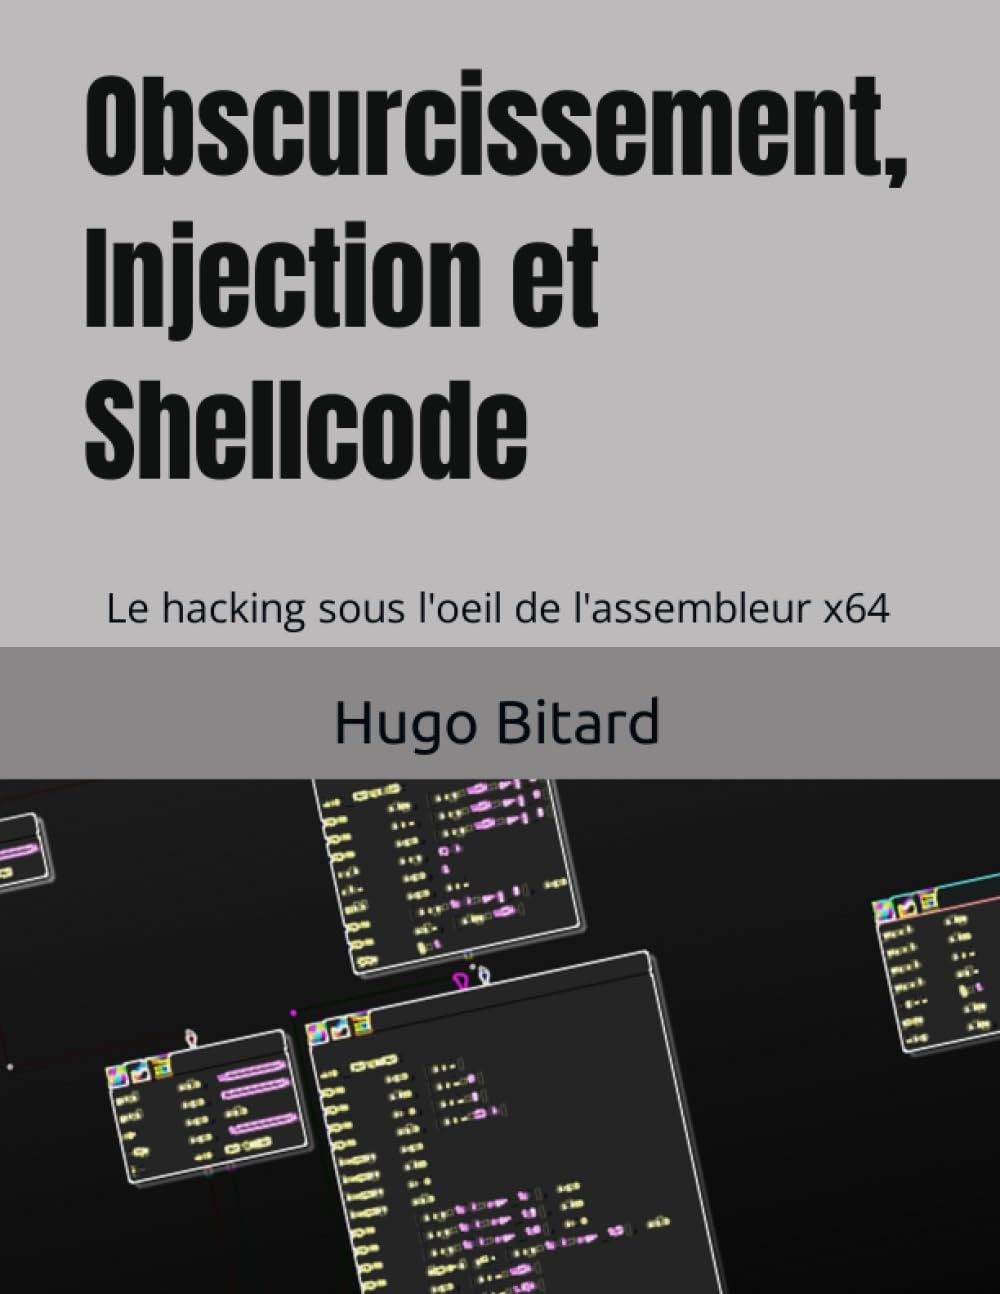 Obscurcissement, injection et shellcode: Le hacking sous l'oeil de l'assembleur x64